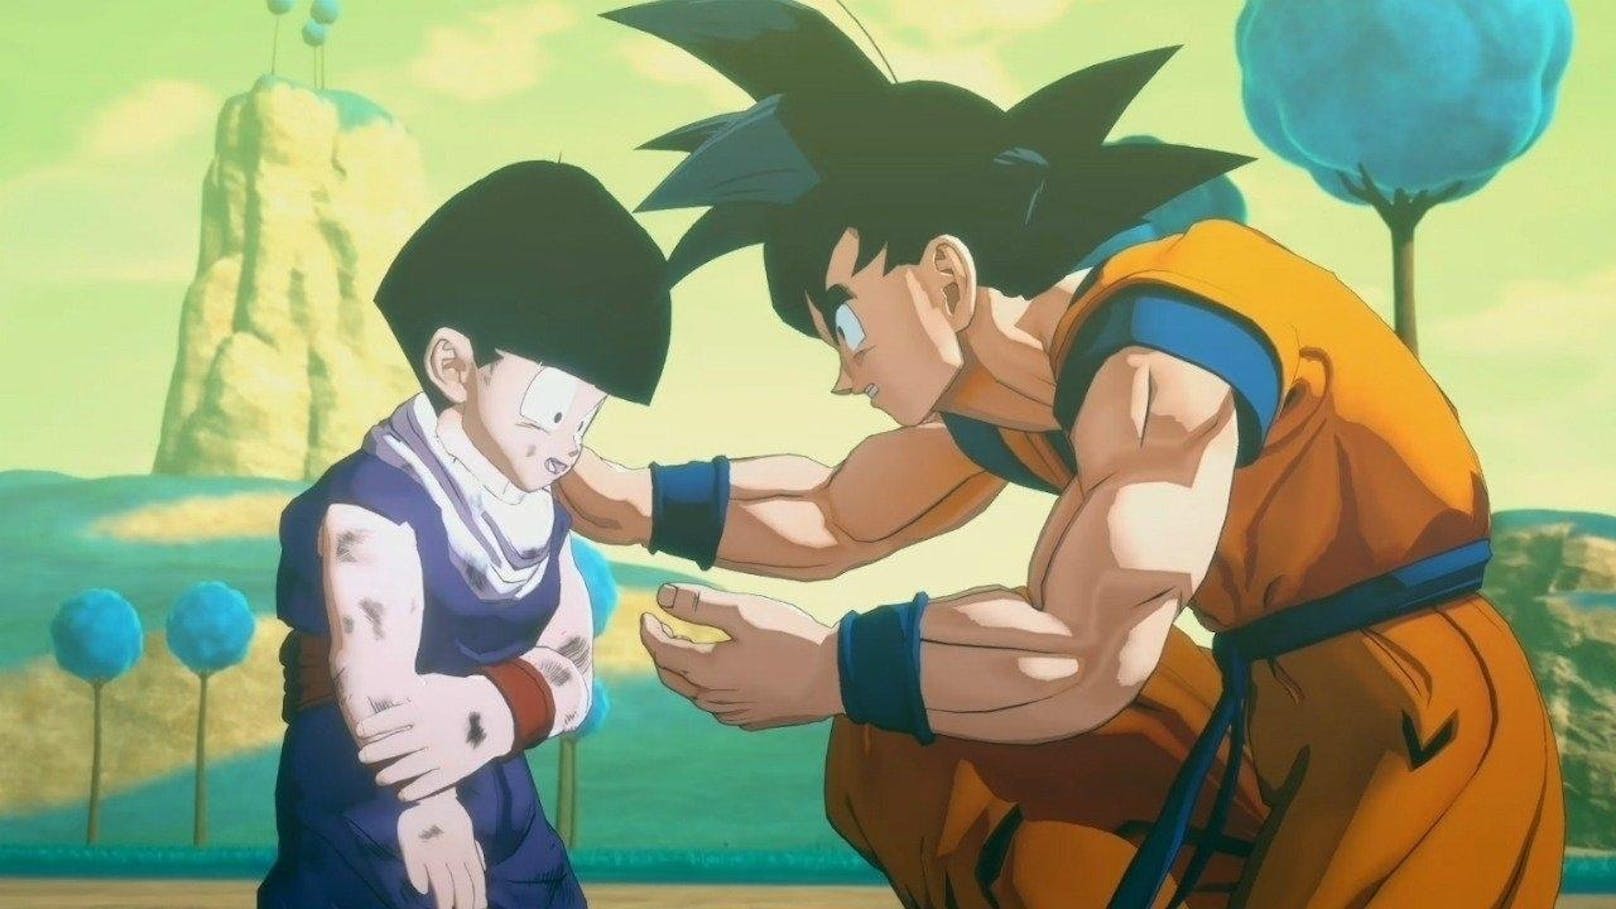 <b>28. Jänner 2019:</b> Bandai Namco gewährt einen ersten Blick auf Dragon Ball Game - Project Z, ein komplett neues Action-Rollen für PlayStation 4, Xbox One und PC. Die wenigen Augenblicke des Trailers reichen, um Fans im Netz ausflippen zu lassen. Den das Spiel scheint einen Hype wie kaum ein anderes auslösen zu können. In der epischen Nacherzählung können Dragon Ball-Fans die legendären Abenteuer des Saiyajin namens Kakarott, besser bekannt als Son-Goku, nacherleben und Teil der Geschichte von Dragon Ball Z werden. Die Spieler schlüpfen in die Rolle von Son-Goku und begleiten ihn bei seinem Streben nach Macht, seinem Durst nach Herausforderungen und vor allem seinem Wunsch, die Erde vor den furchterregendsten Schurken zu schützen. Das Spiel soll noch 2019 erscheinen. <a href="//www.heute.at/videotv/?vid=4018159&cid=15">Den ersten Trailer ansehen!</a>